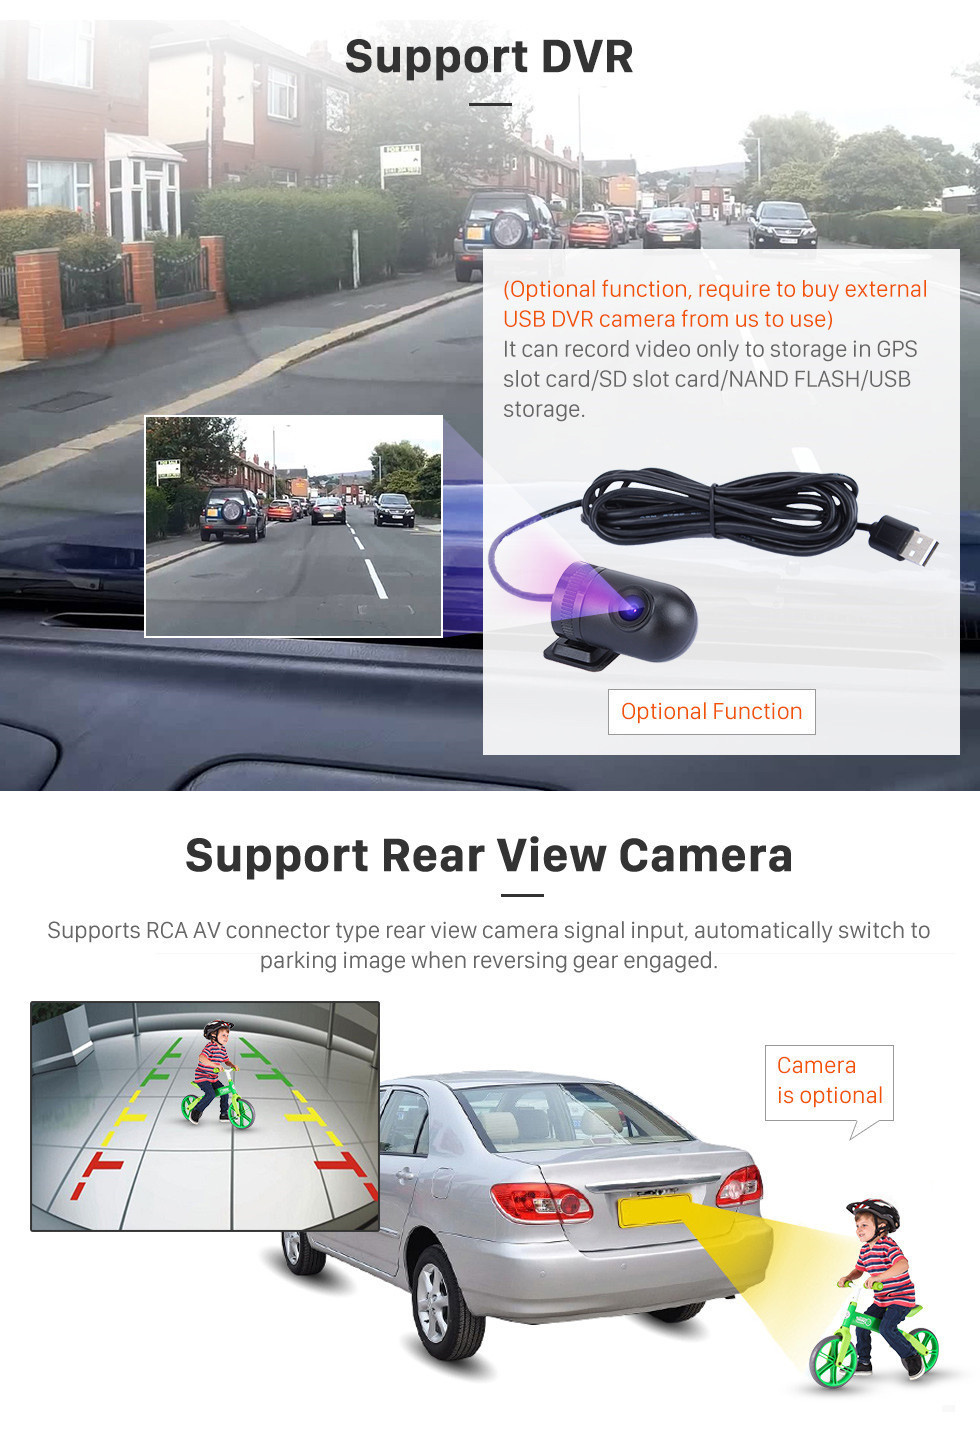 Seicane 10.1 polegadas Android 11.0 Radio for 2019 Ssang Yong Rexton Bluetooth HD Touchscreen Navegação GPS Carplay Suporte USB TPMS Câmera de backup DAB +